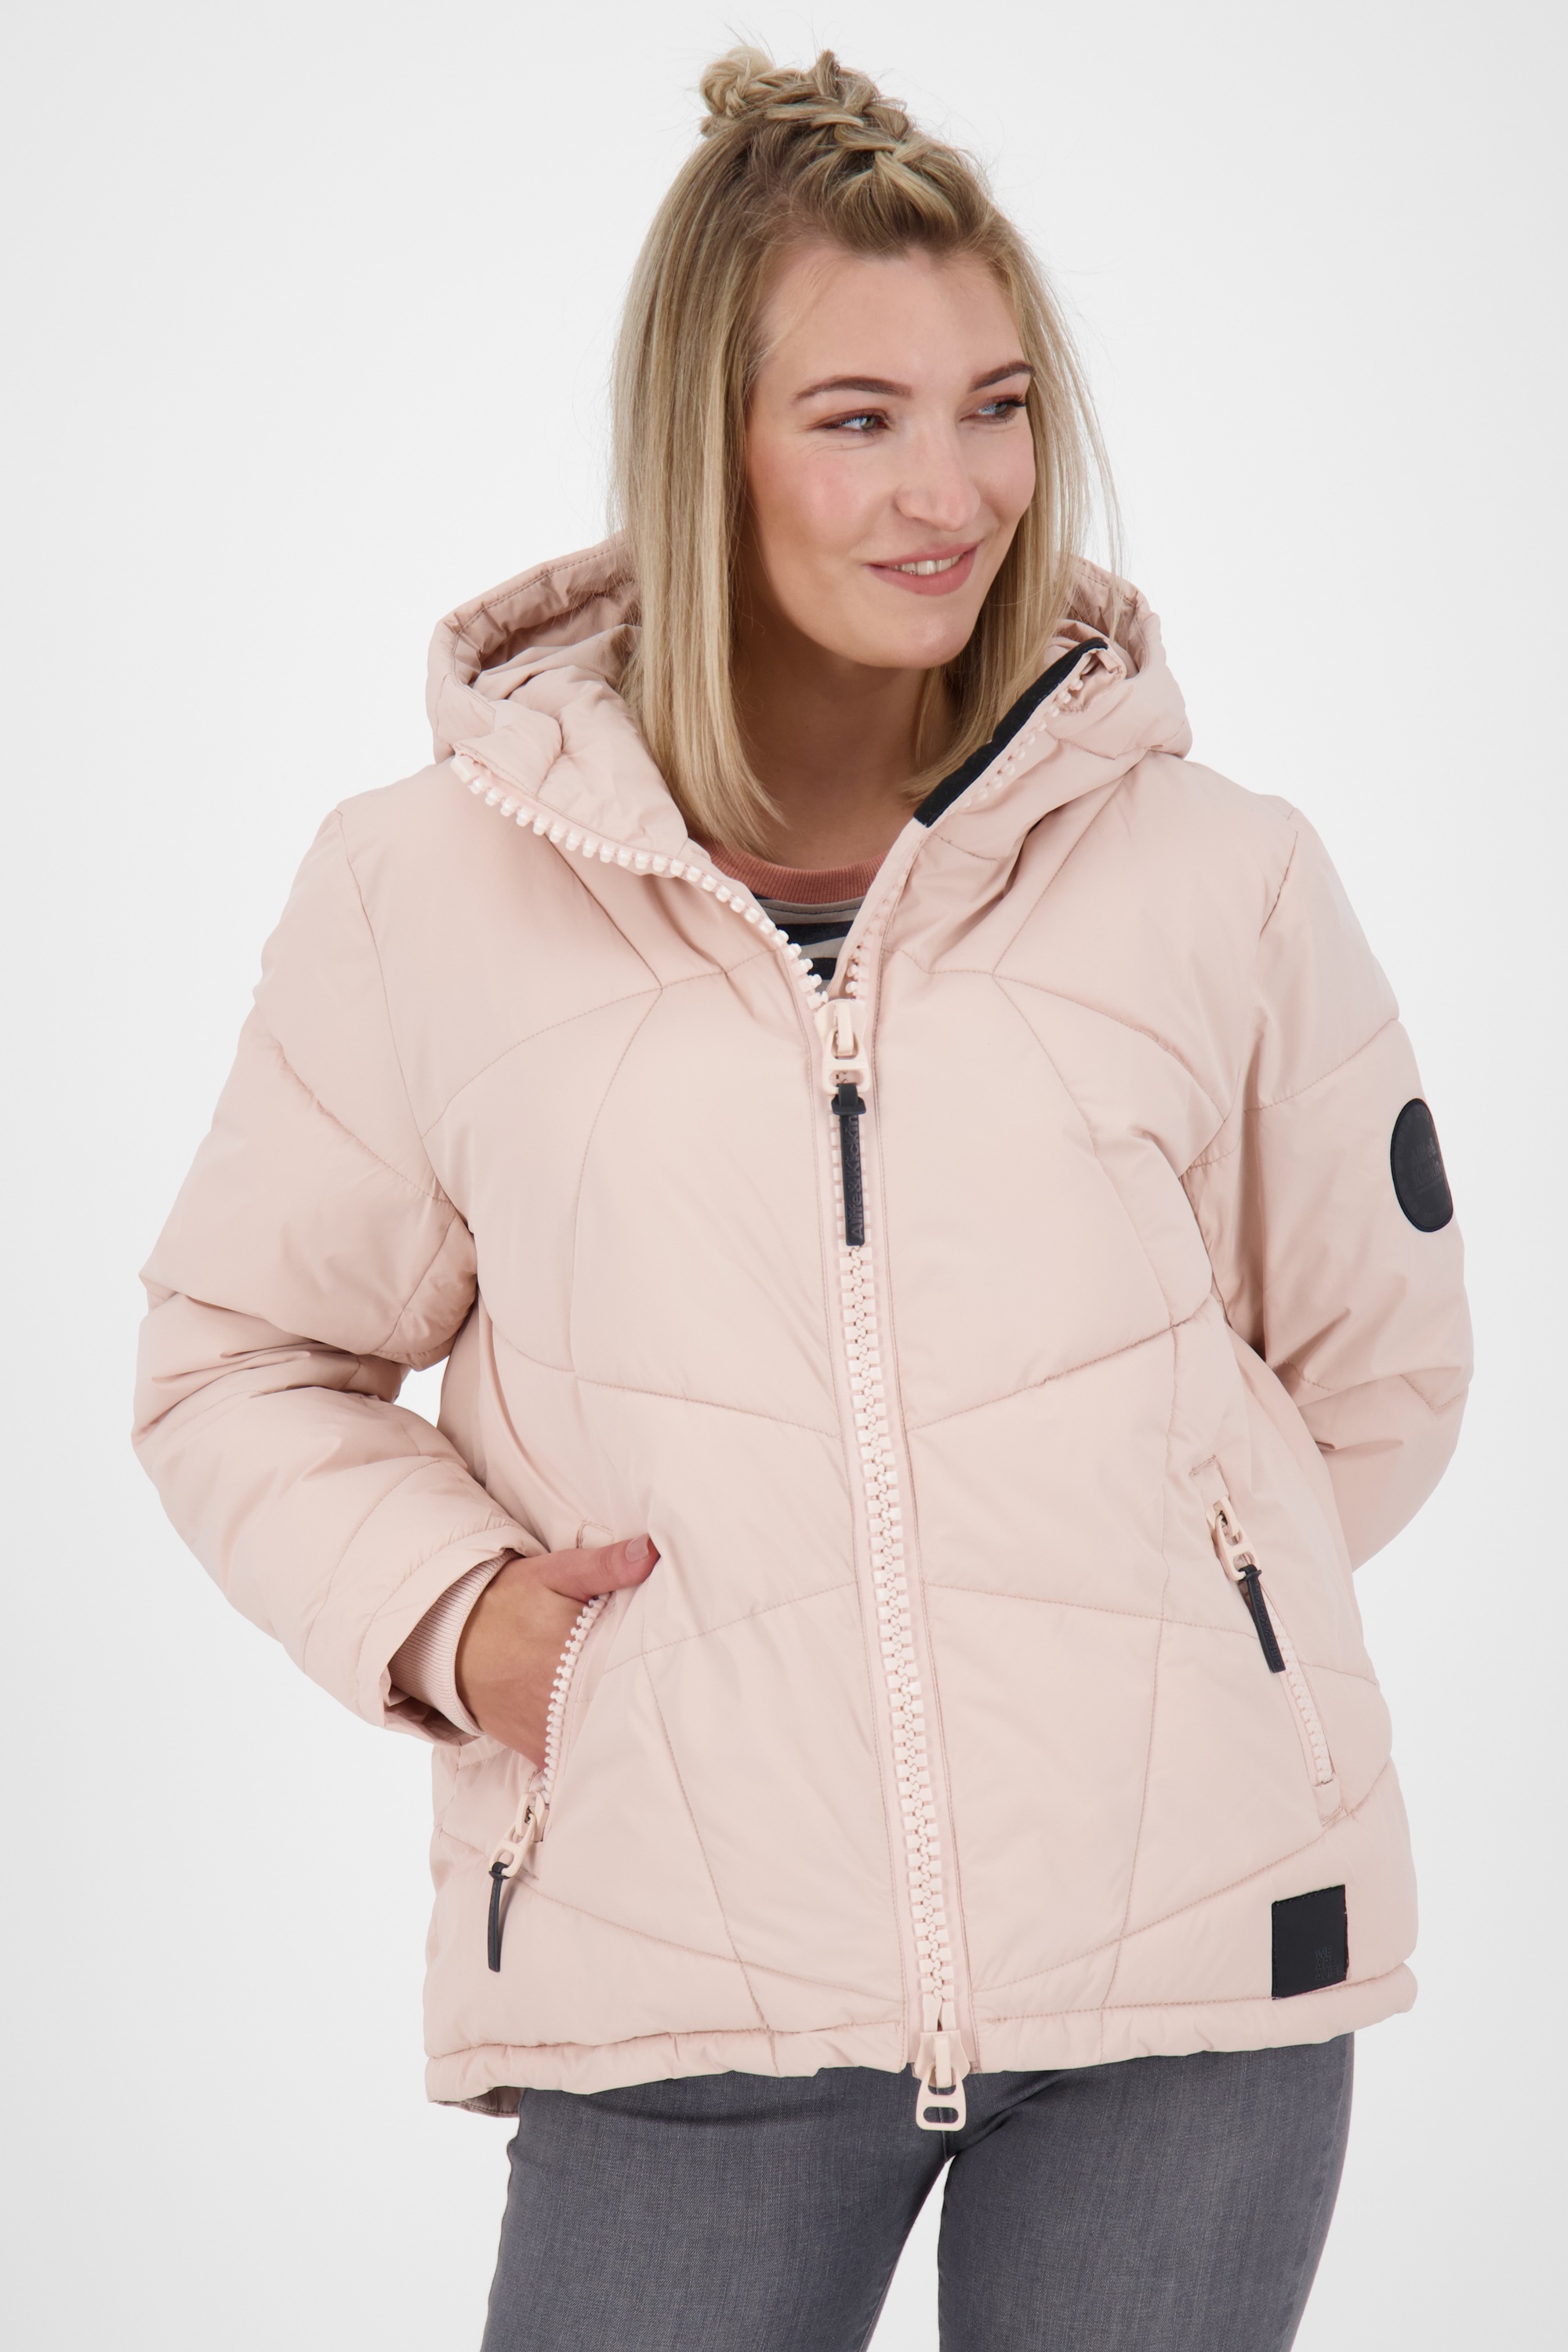 Weltweit sehr beliebt Alife & BAUR Kickin kaufen Jacket | Jacke« Winterjacke, A »KasandraAK Winterjacke Damen gefütterte